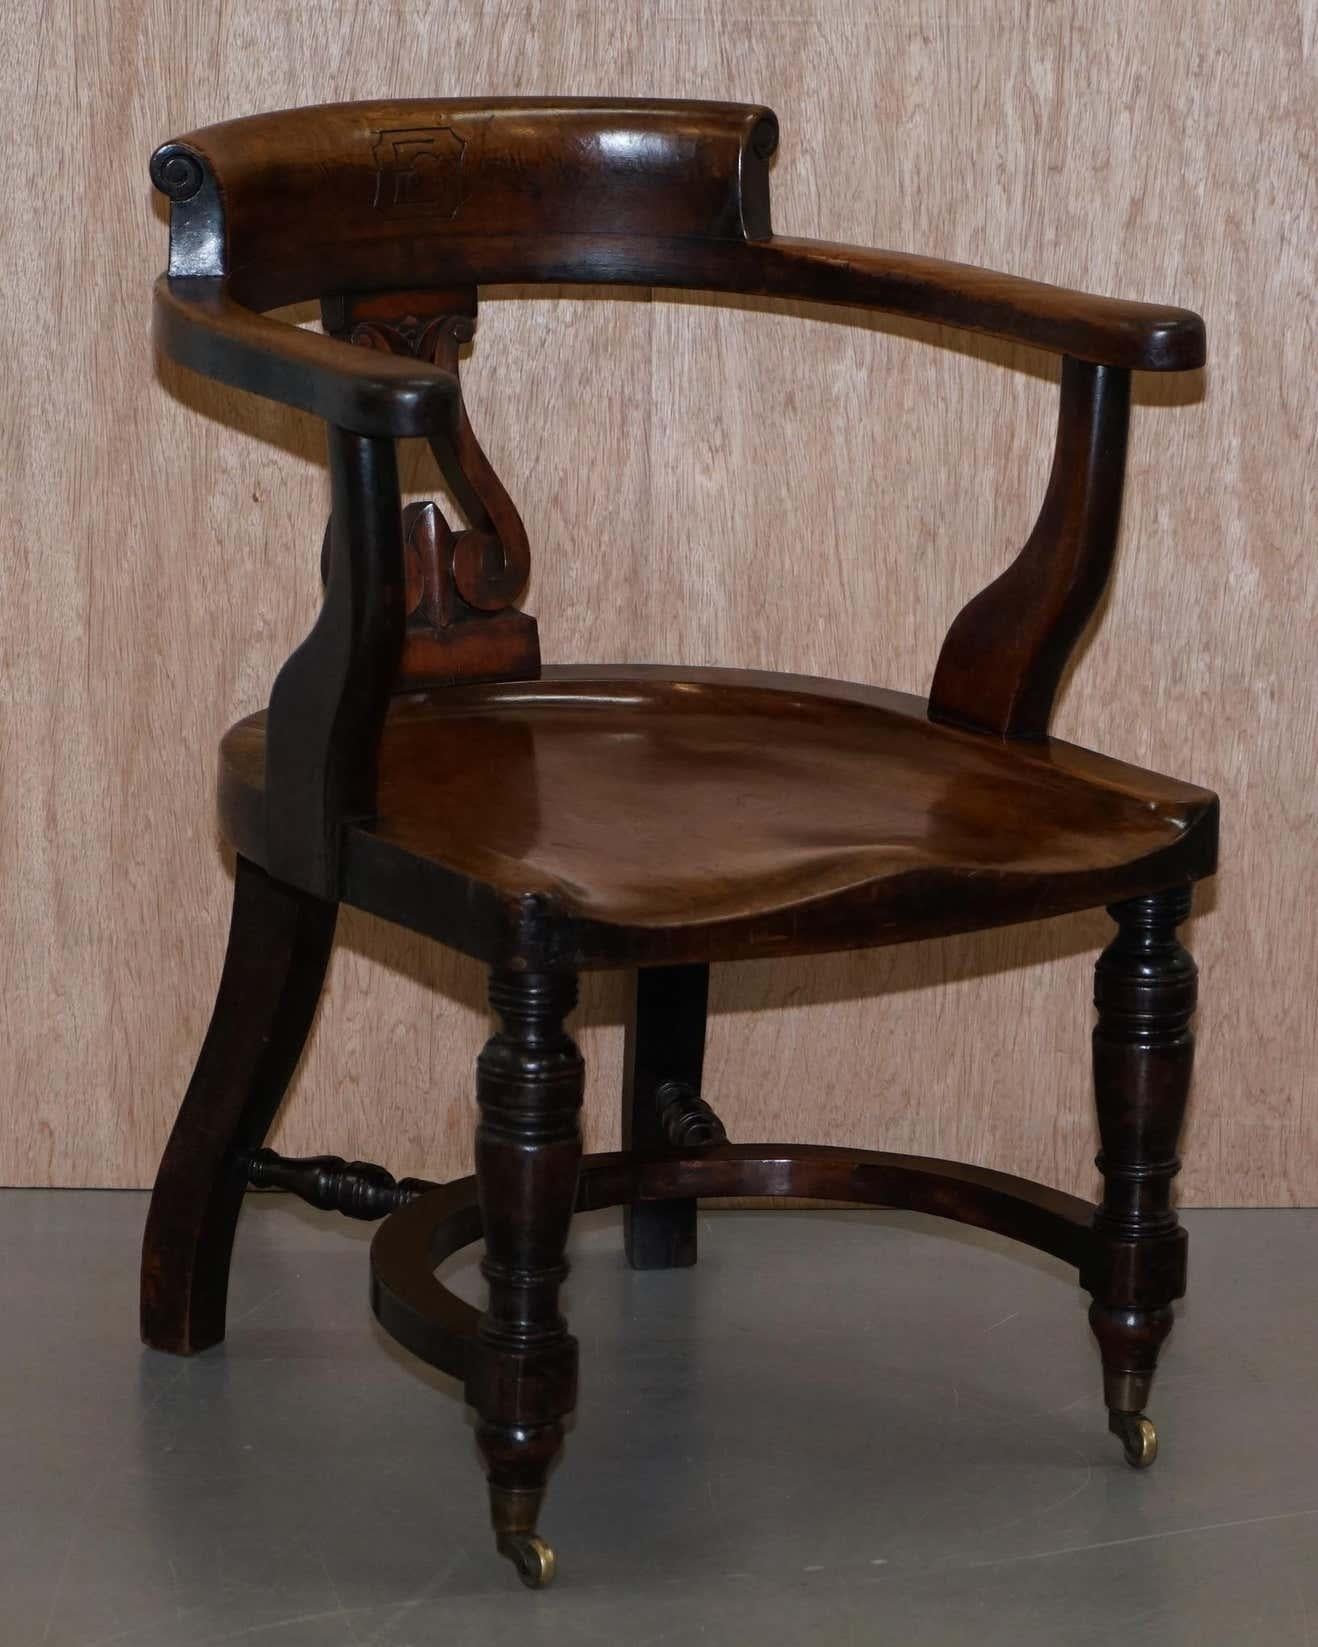 Nous sommes ravis d'offrir à la vente cette étonnante et importante chaise de capitaine de l'Eton College en noyer de l'époque victorienne, sculptée d'une CE dans le dossier.

Une trouvaille substantielle, je n'ai jamais vu cette chaise à vendre